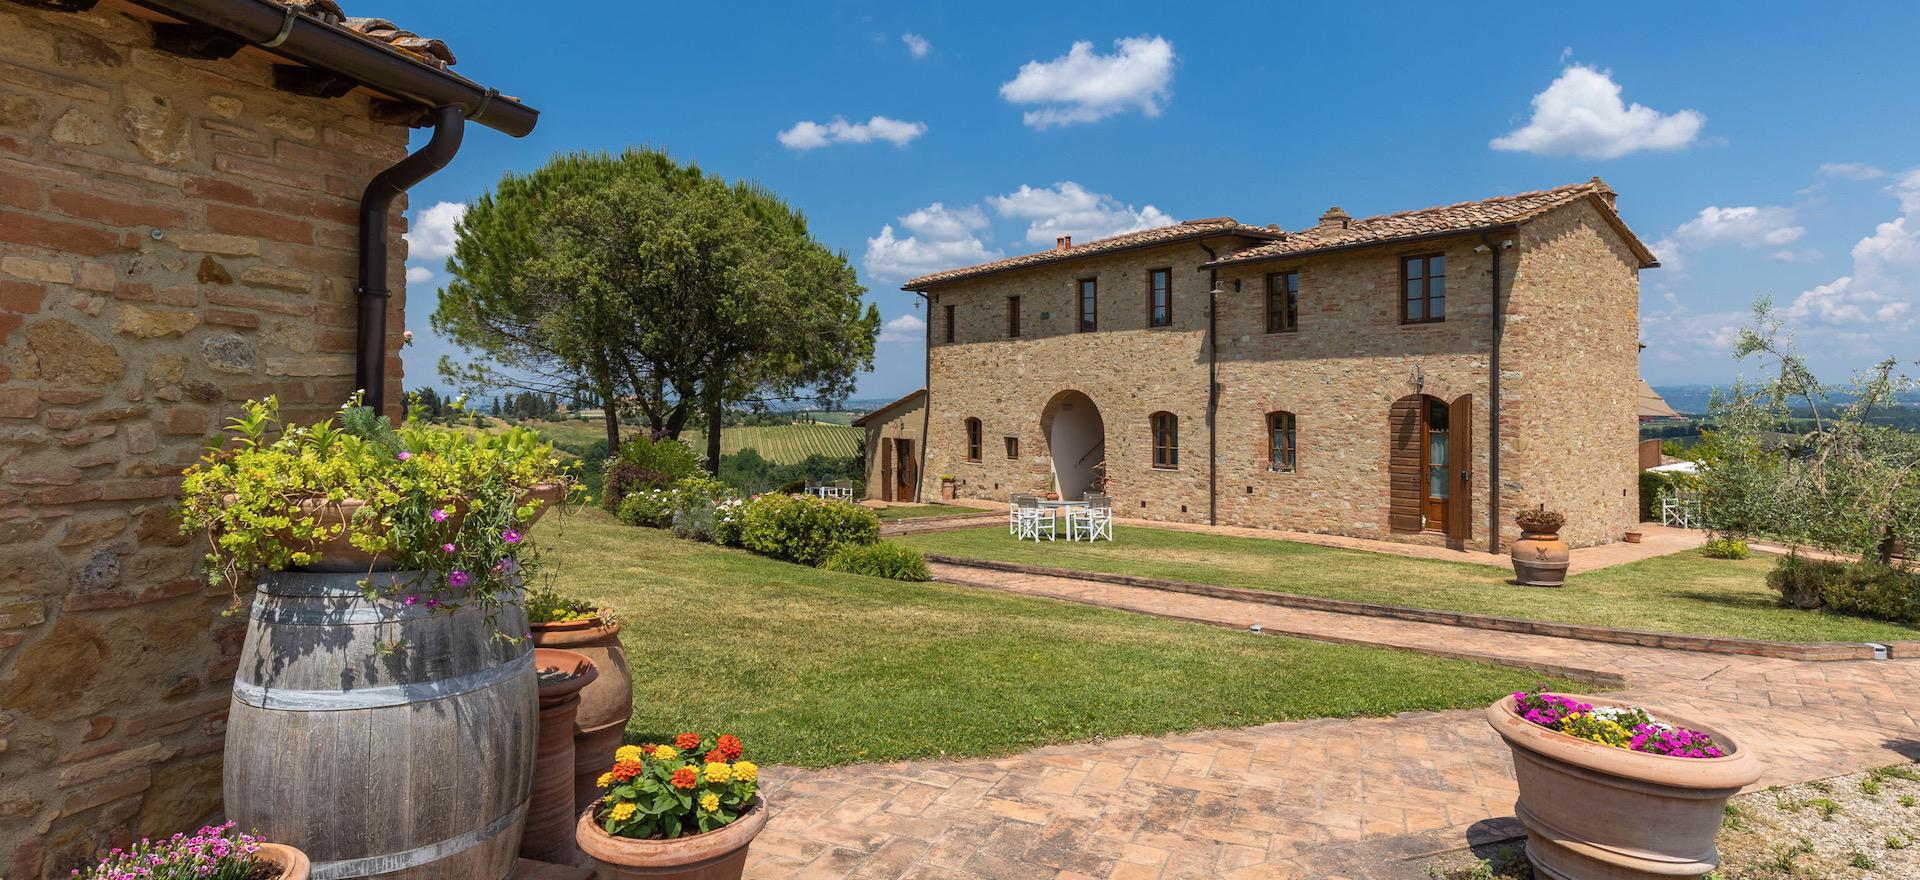 Elegante wijnboerderij en agriturismo bij San Gimignano